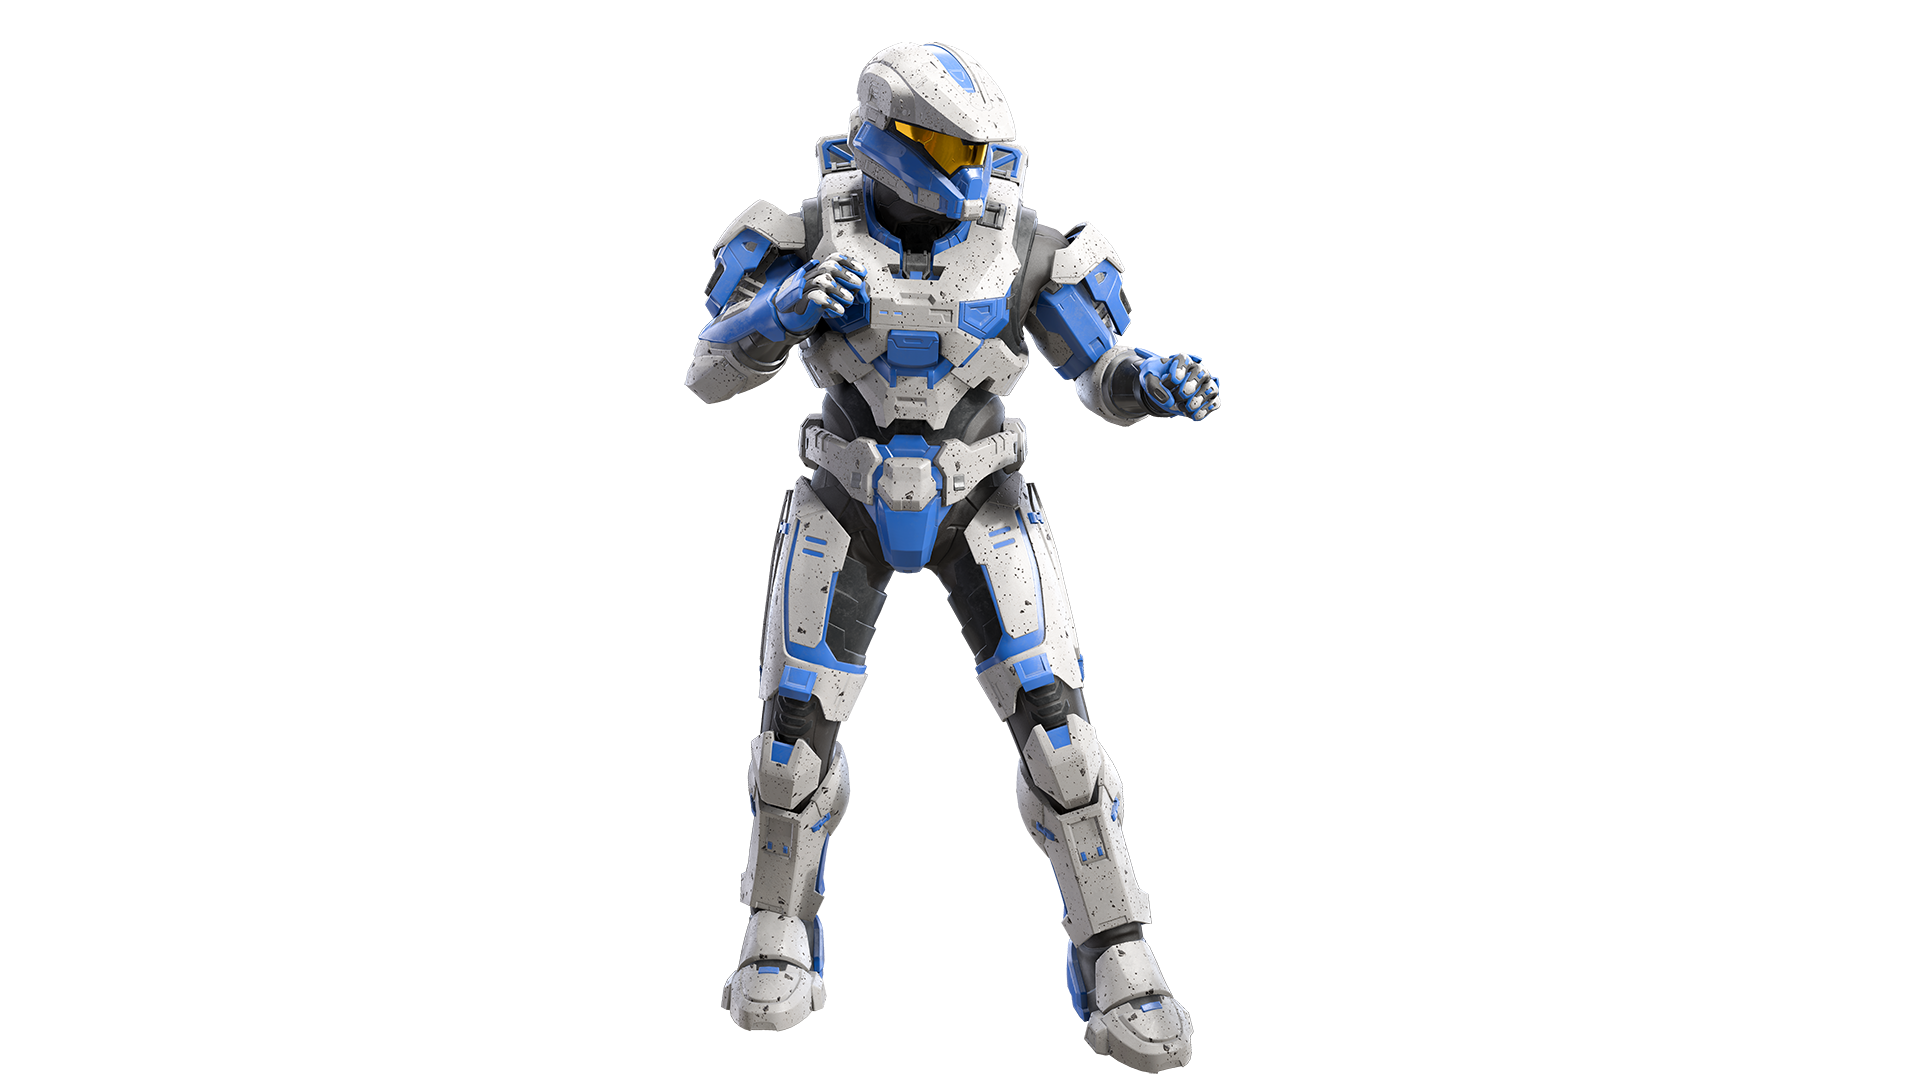 Image of Halo x Oreo armor coating